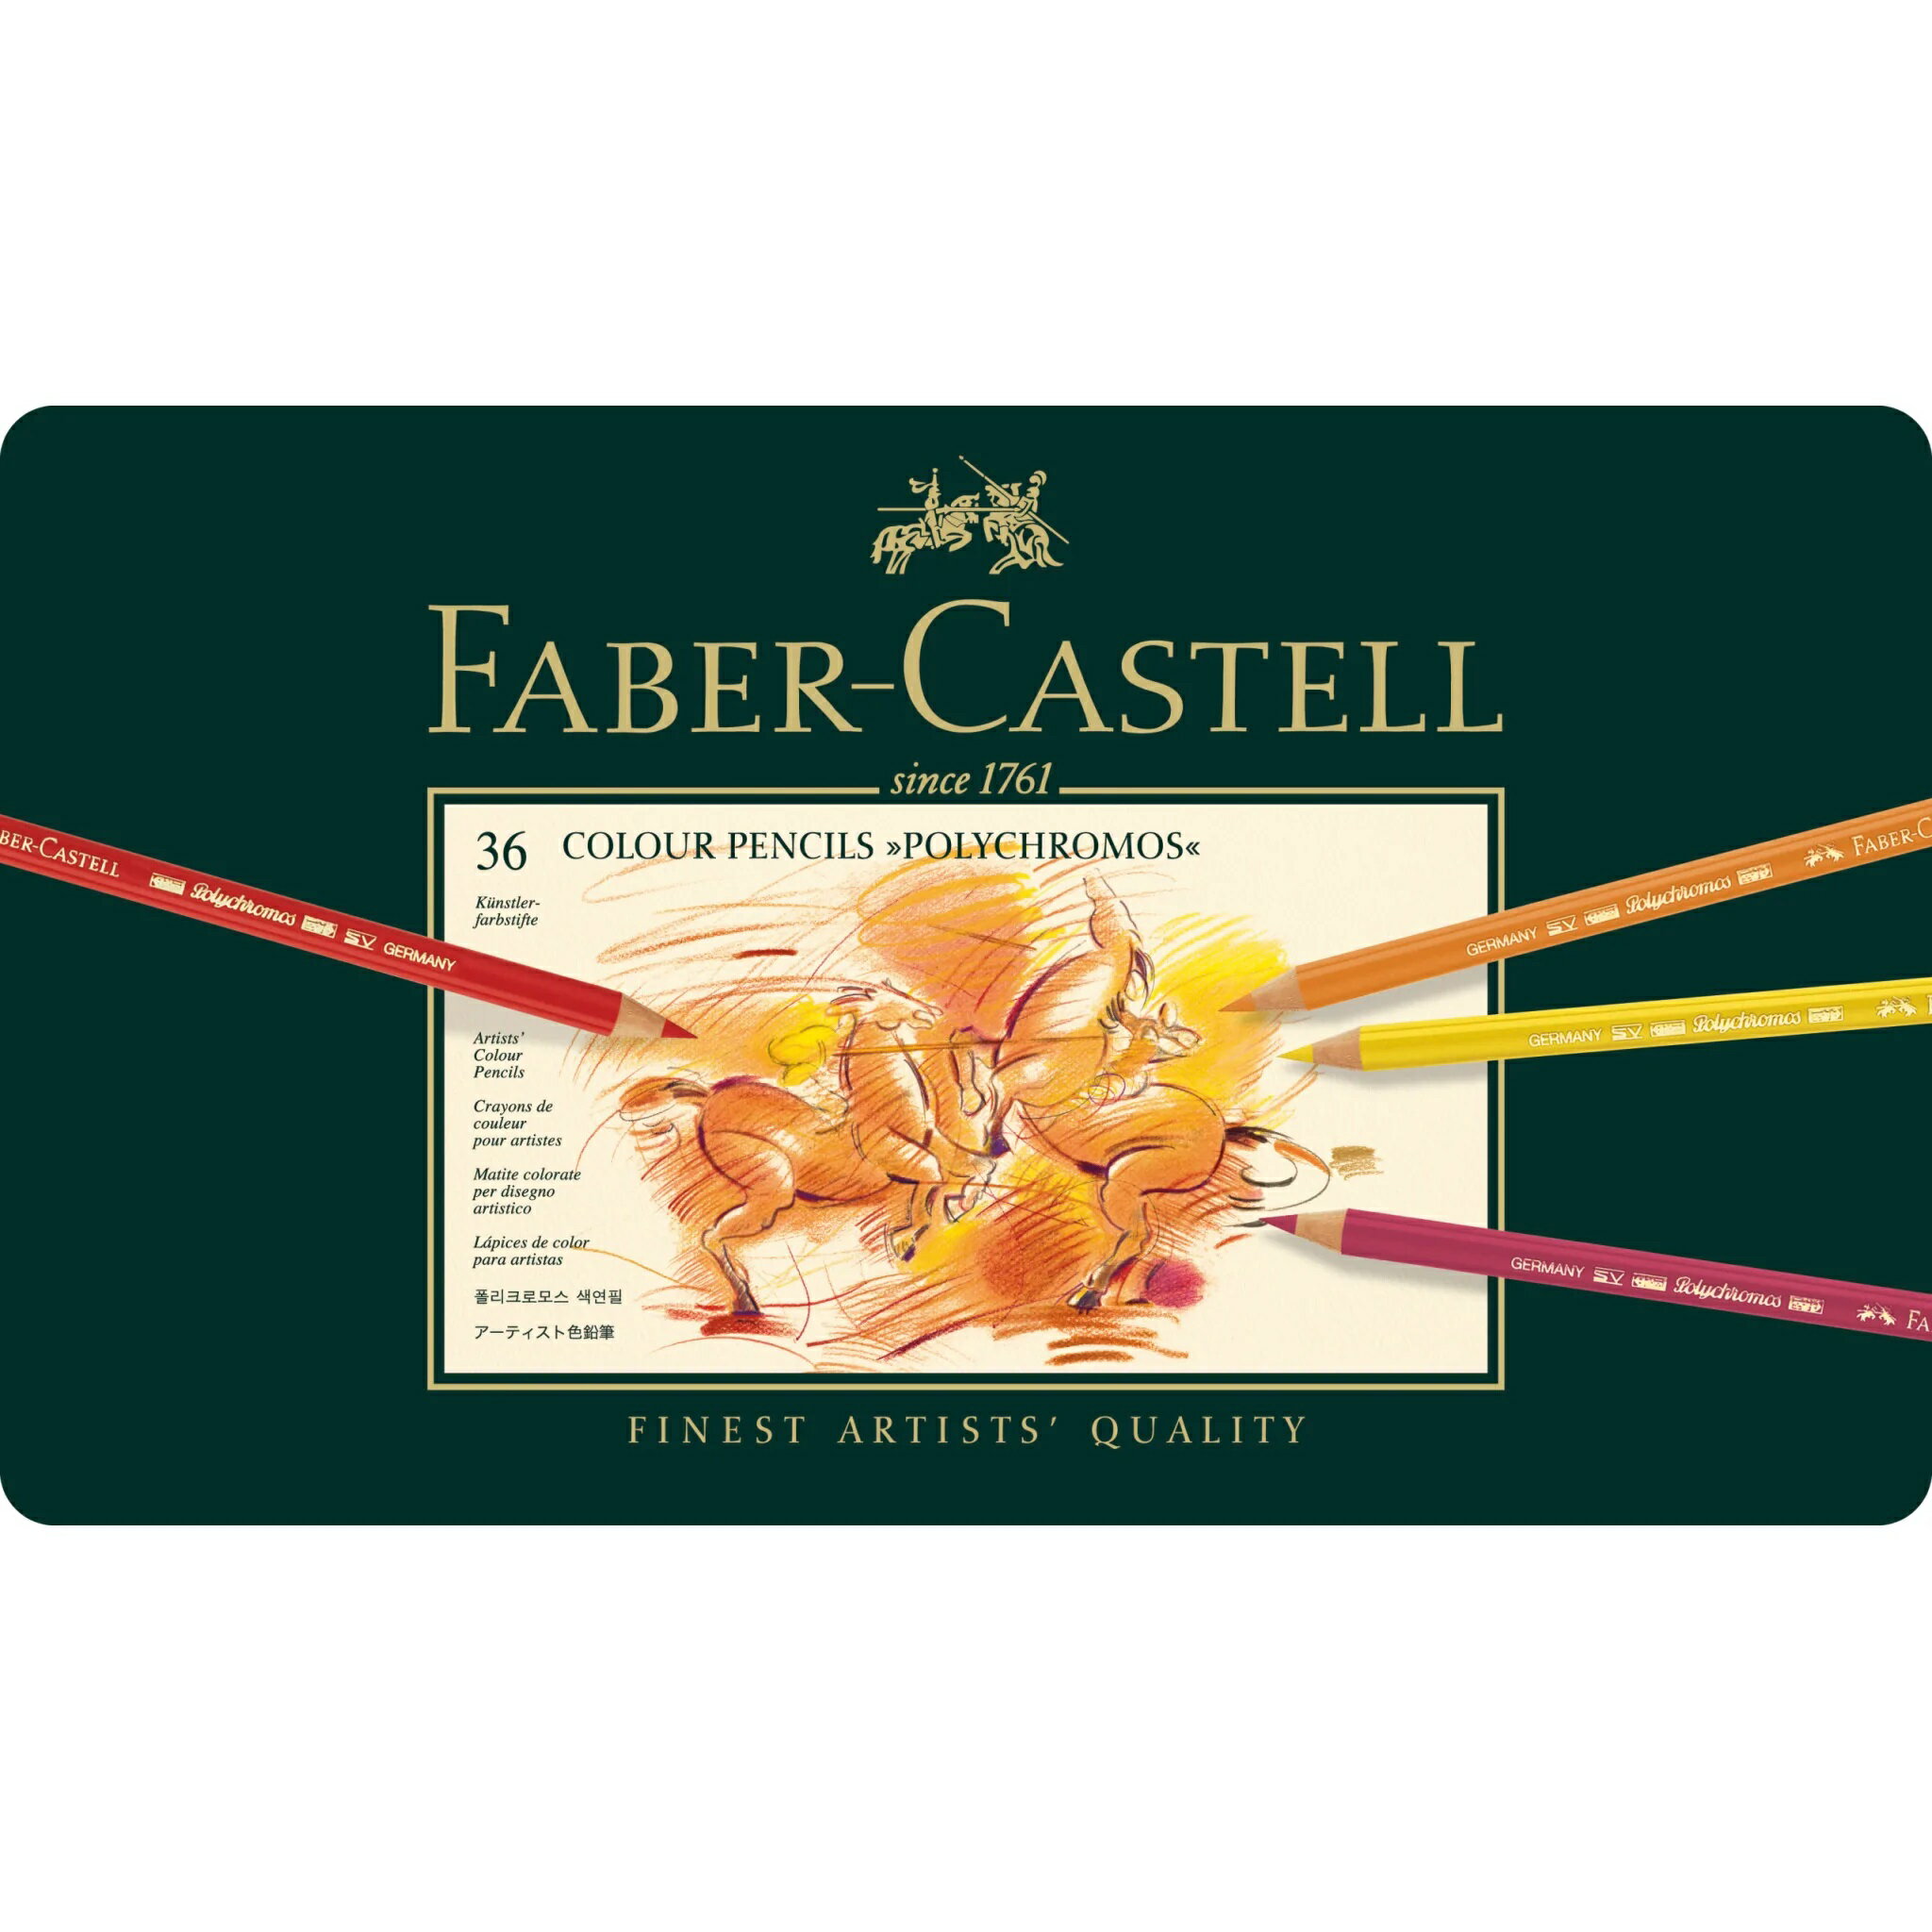 Faber-Castell藝術級油性色鉛筆36色 *110036